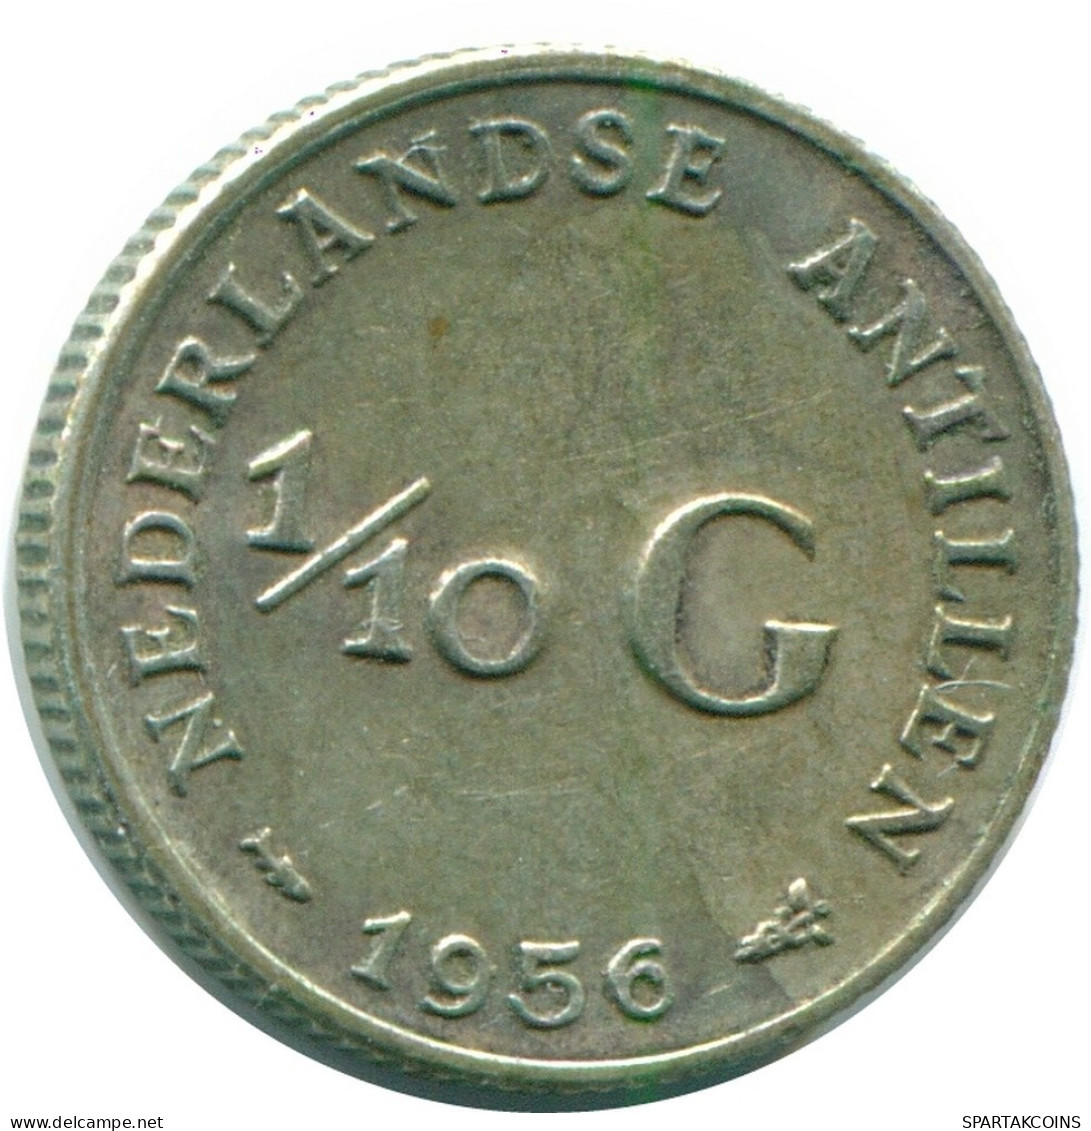 1/10 GULDEN 1956 NIEDERLÄNDISCHE ANTILLEN SILBER Koloniale Münze #NL12124.3.D.A - Antilles Néerlandaises